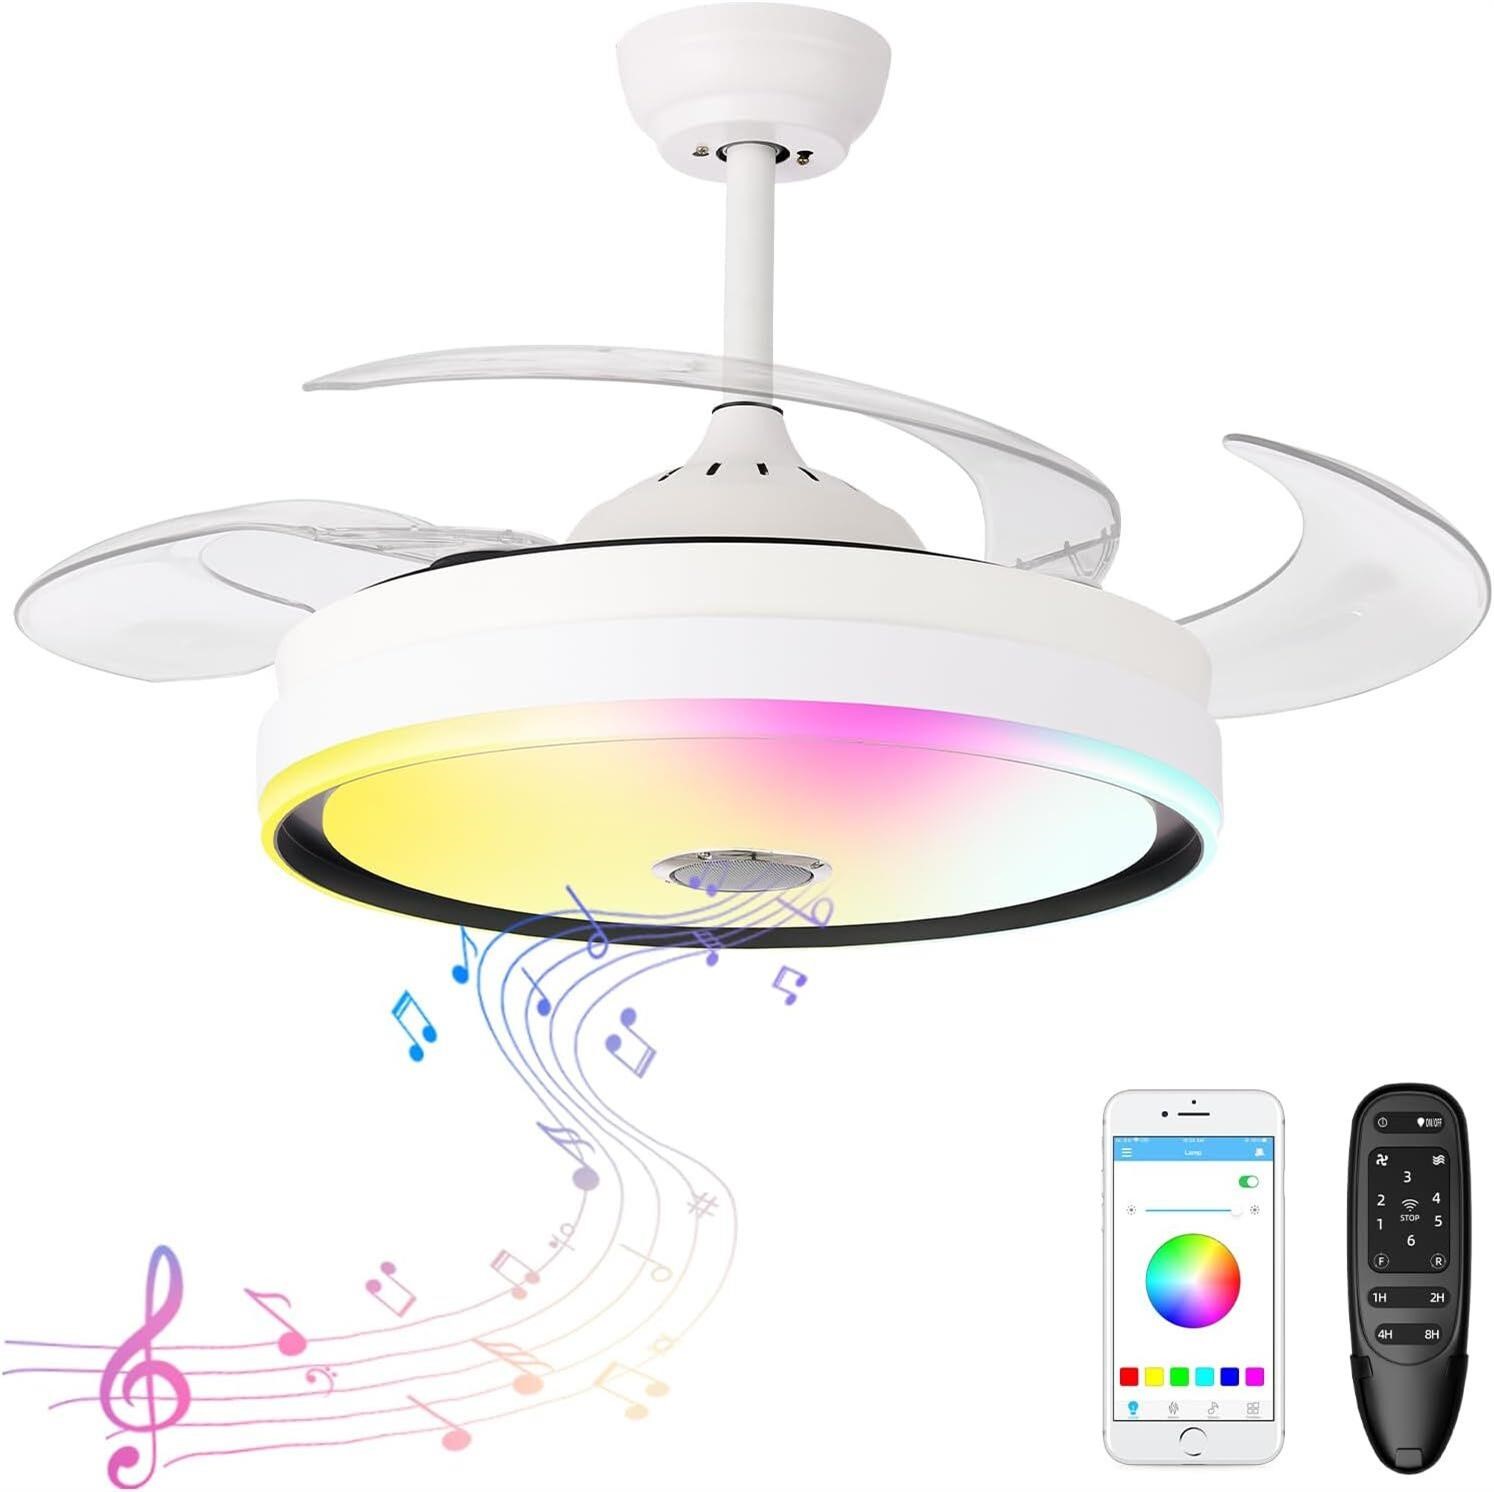 422" Chandelier Ceiling Fan with Bluetooth Speaker